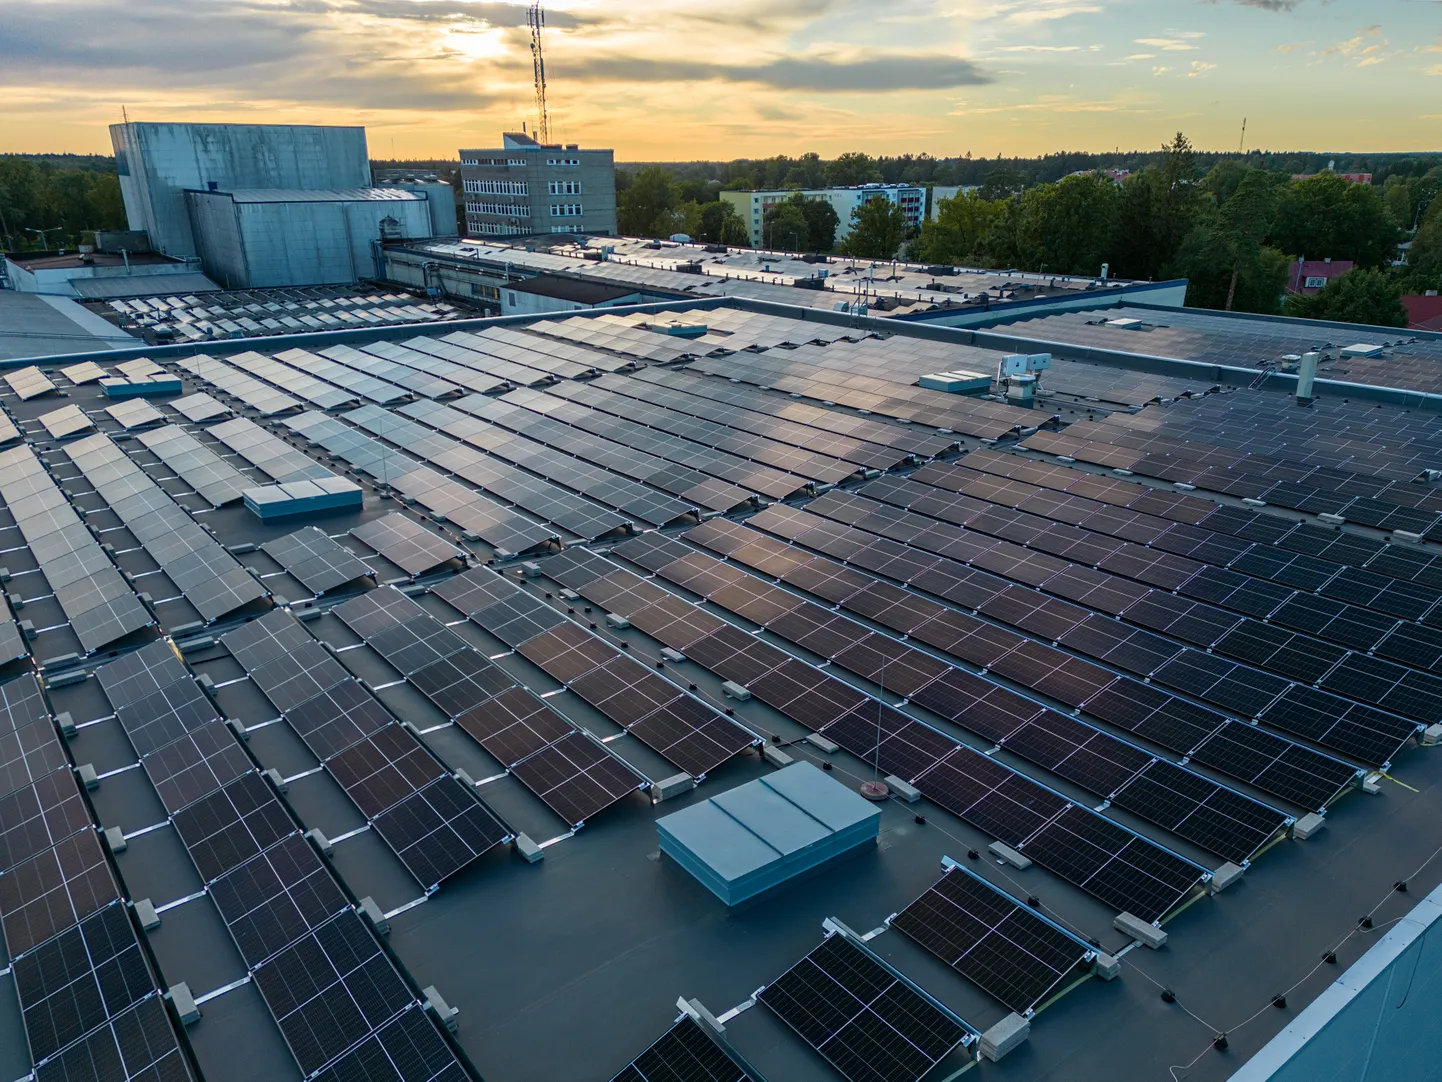 Pildil on Alexela paigaldatud 16 200 m2 päikesejaam Saku õlletehase katusel, mis on Eestis suurim tööstushoone katusele paigaldatud päikesepark.